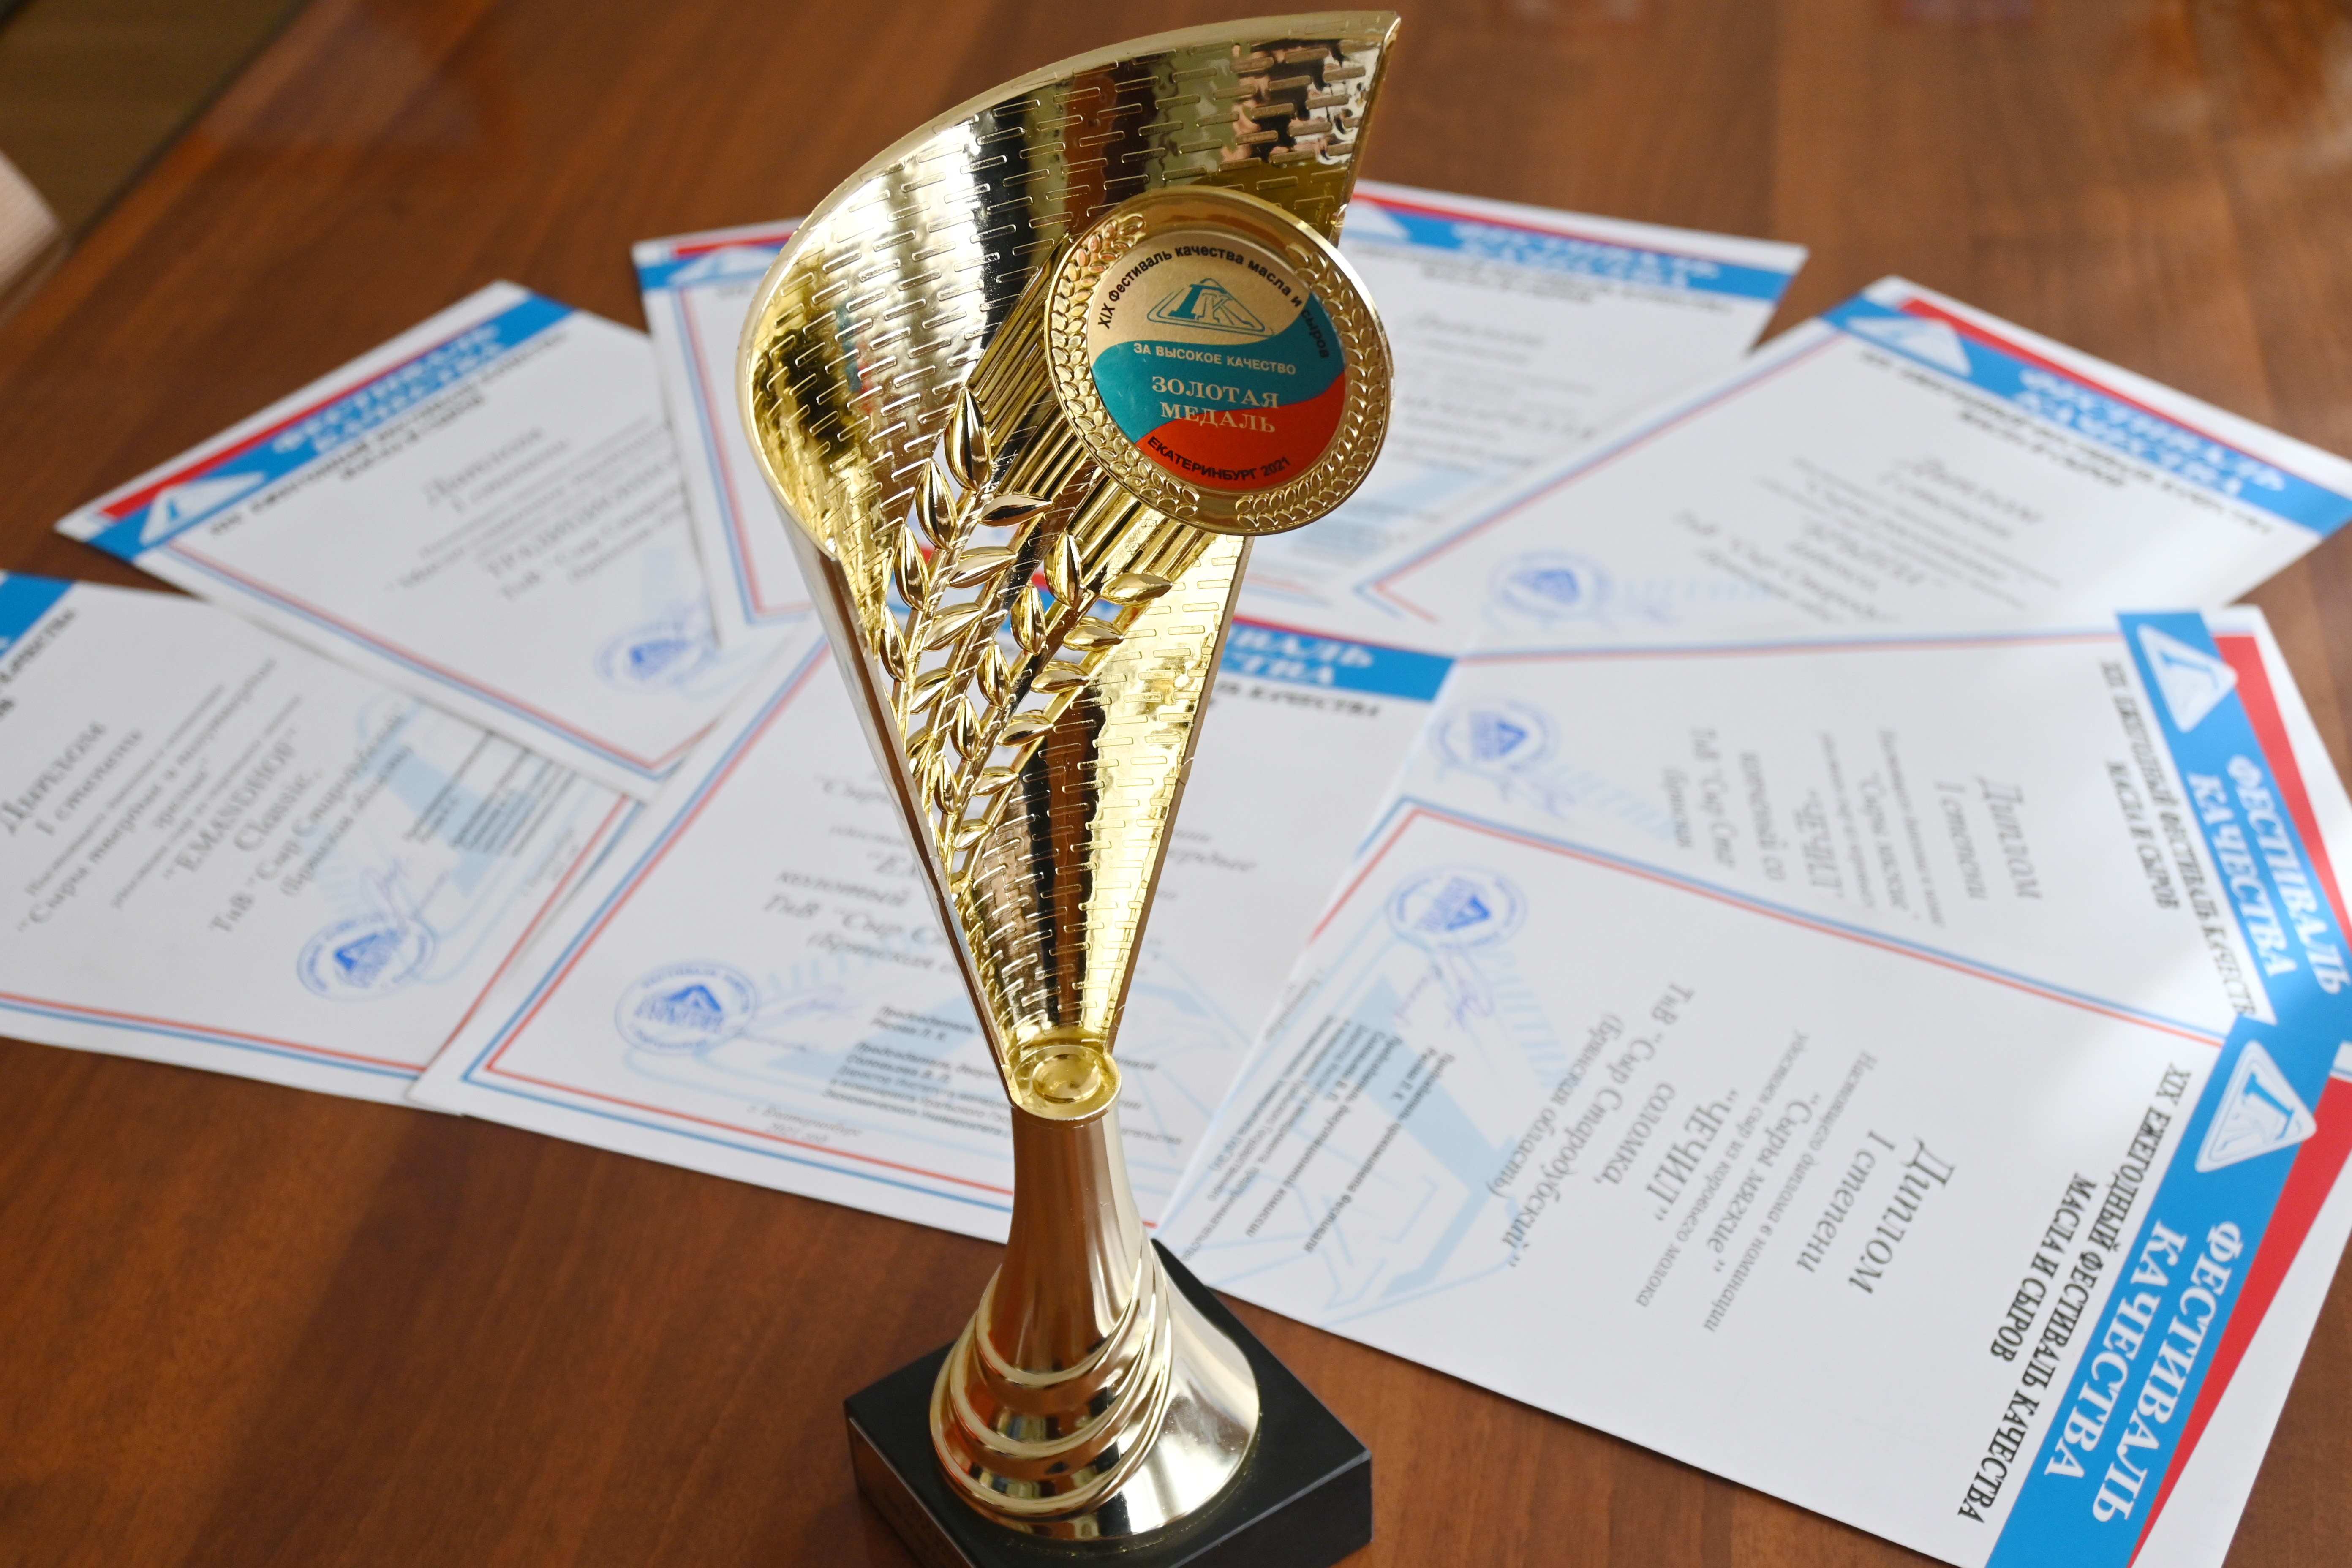 ТнВ "Сыр Стародубский" - победитель конкурса качества сыров и сливочного масла в г. Екатеринбург